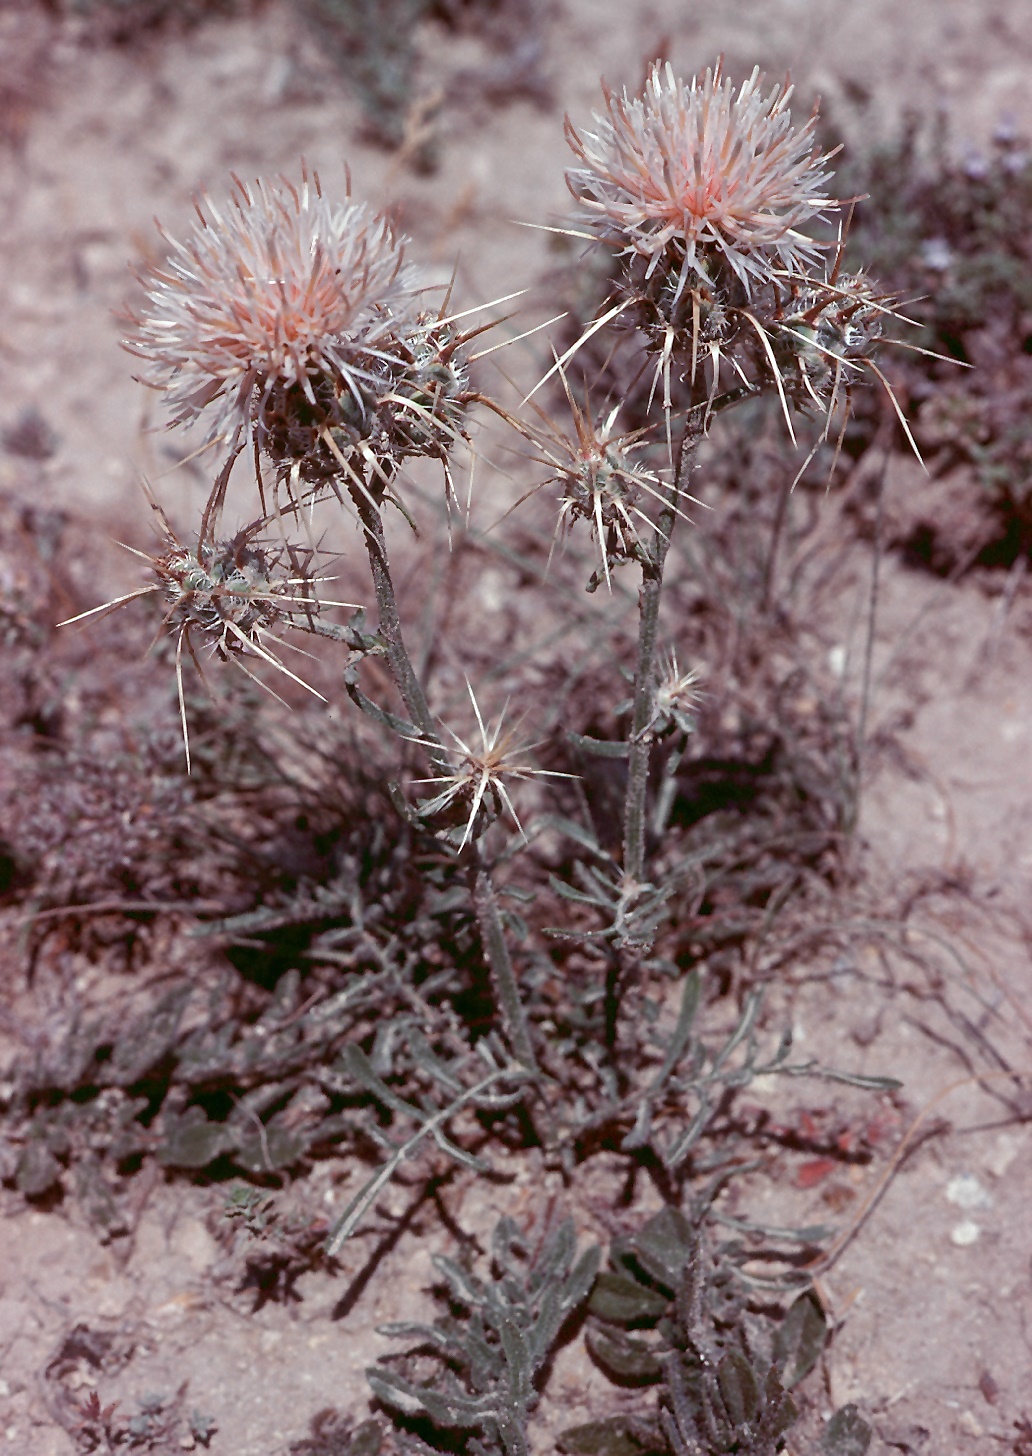 Centaurea pseudoreflexa